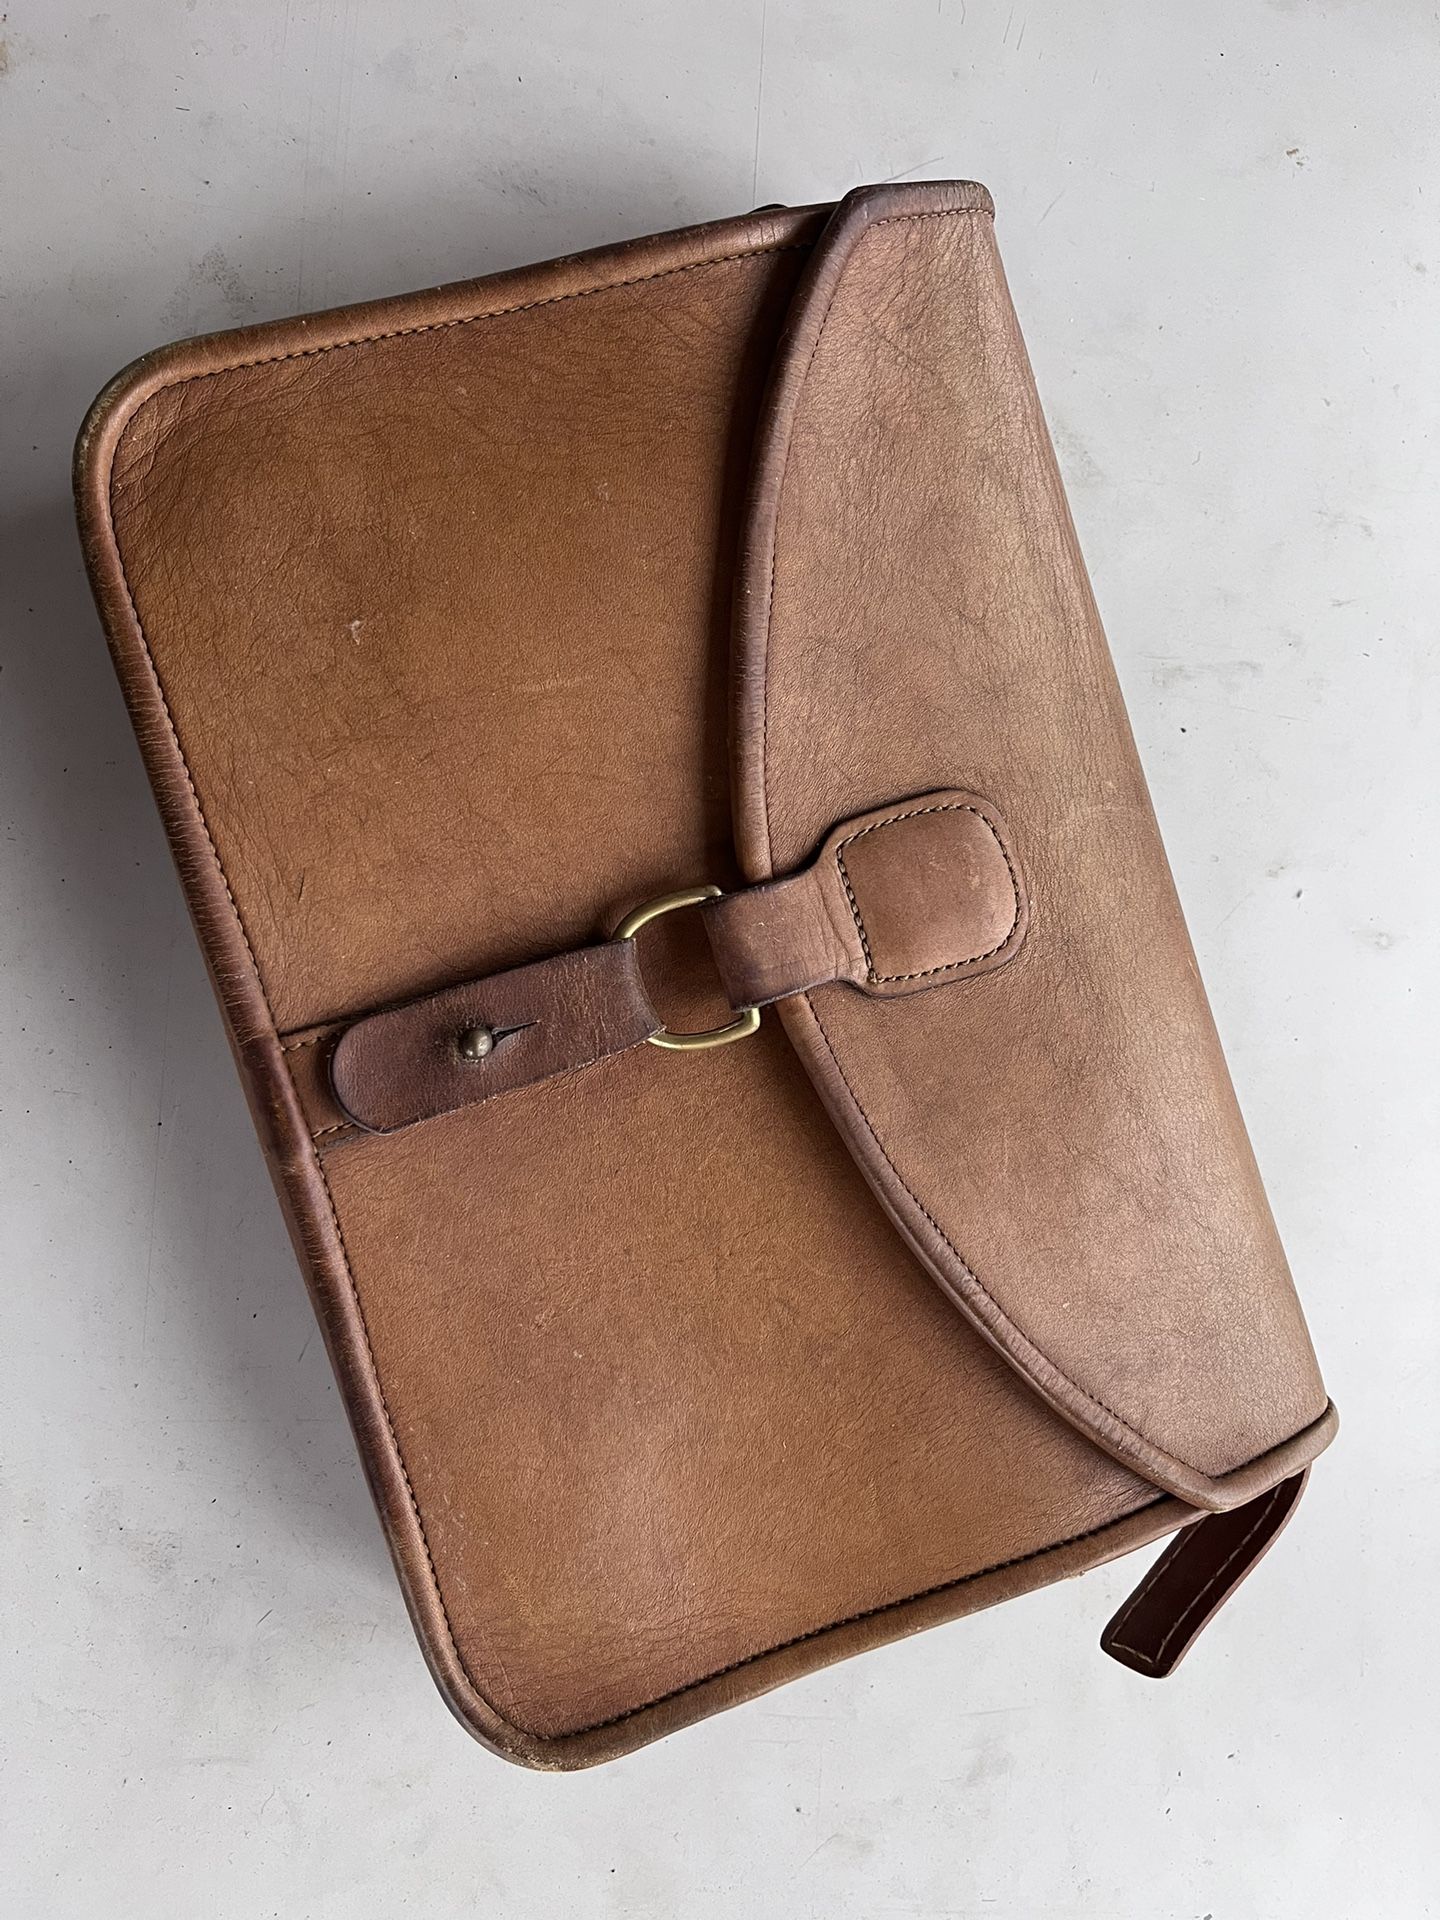 Nice Brown Leather Bag 